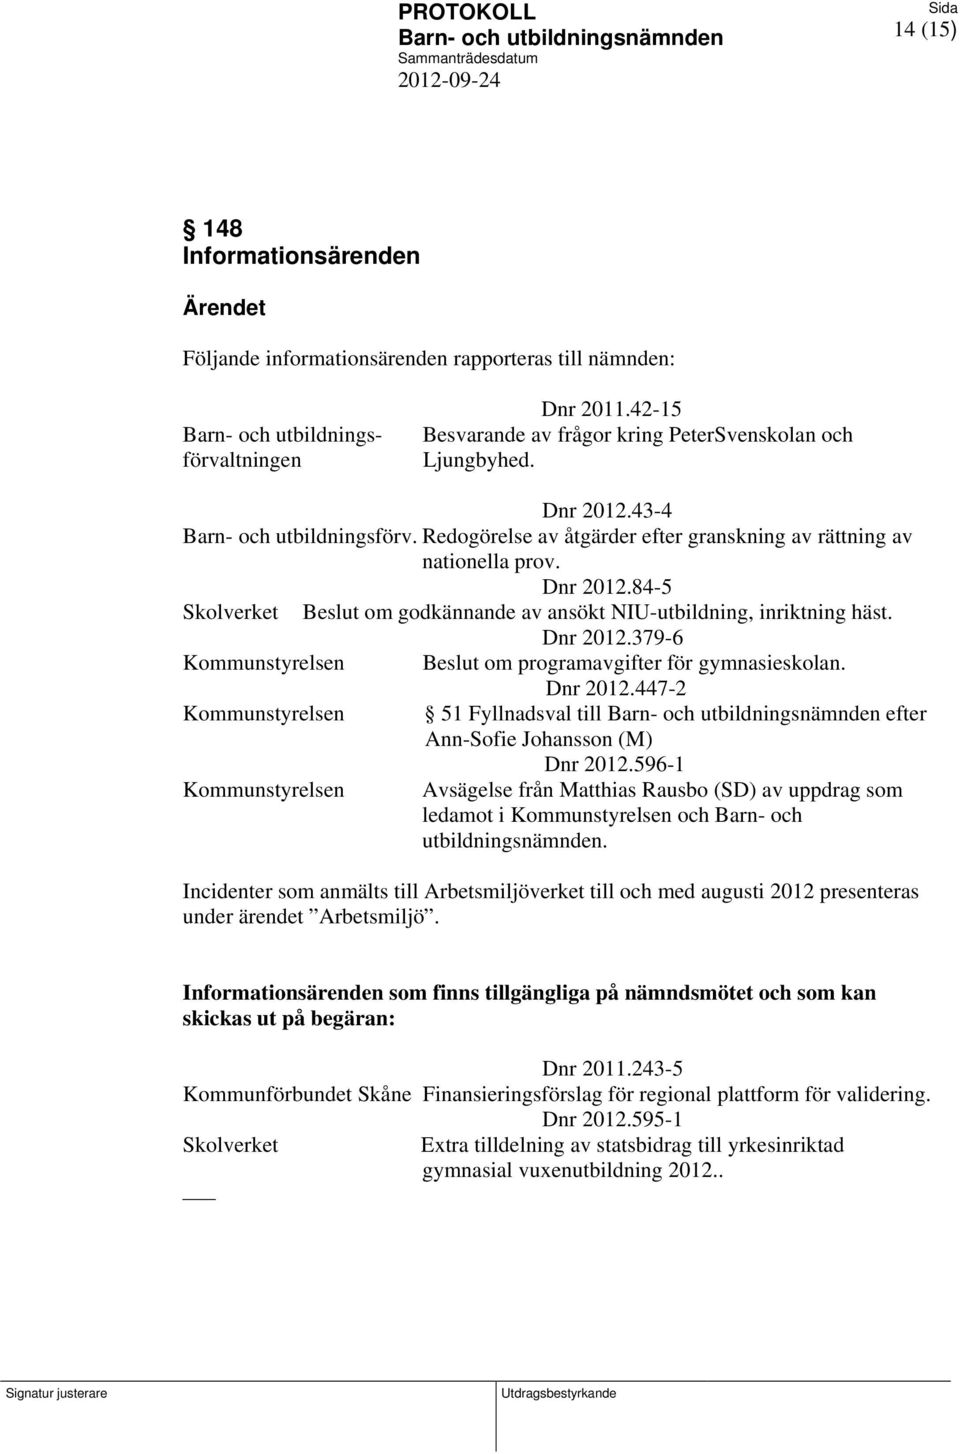 Dnr 2012.379-6 Kommunstyrelsen om programavgifter för gymnasieskolan. Dnr 2012.447-2 Kommunstyrelsen 51 Fyllnadsval till efter Ann-Sofie Johansson (M) Dnr 2012.